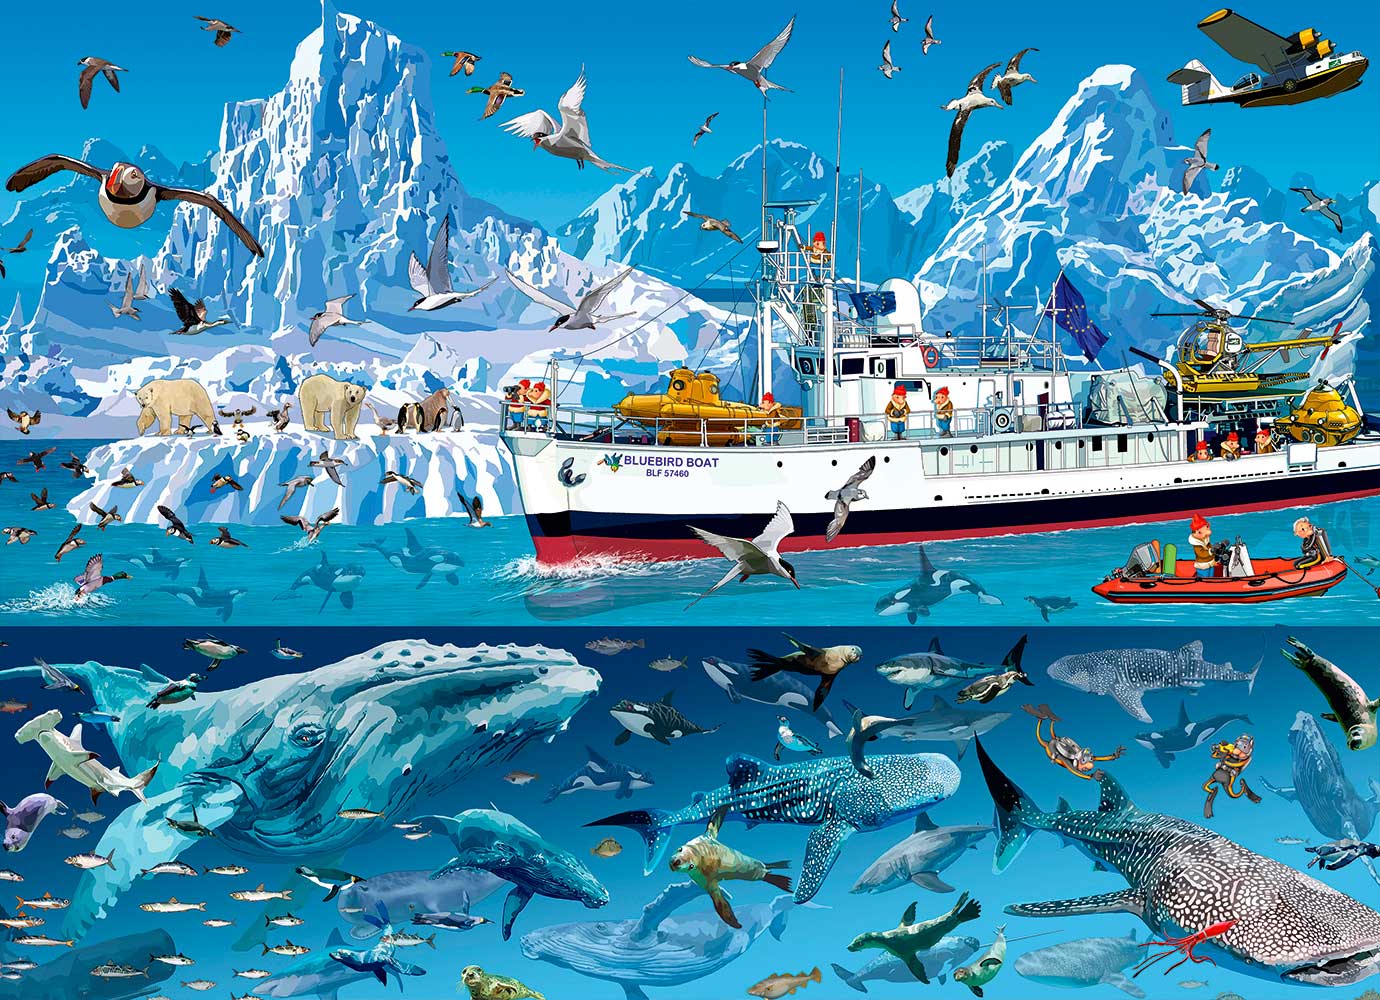 Puzzle Bluebird Barco no Ártico 1500 peças